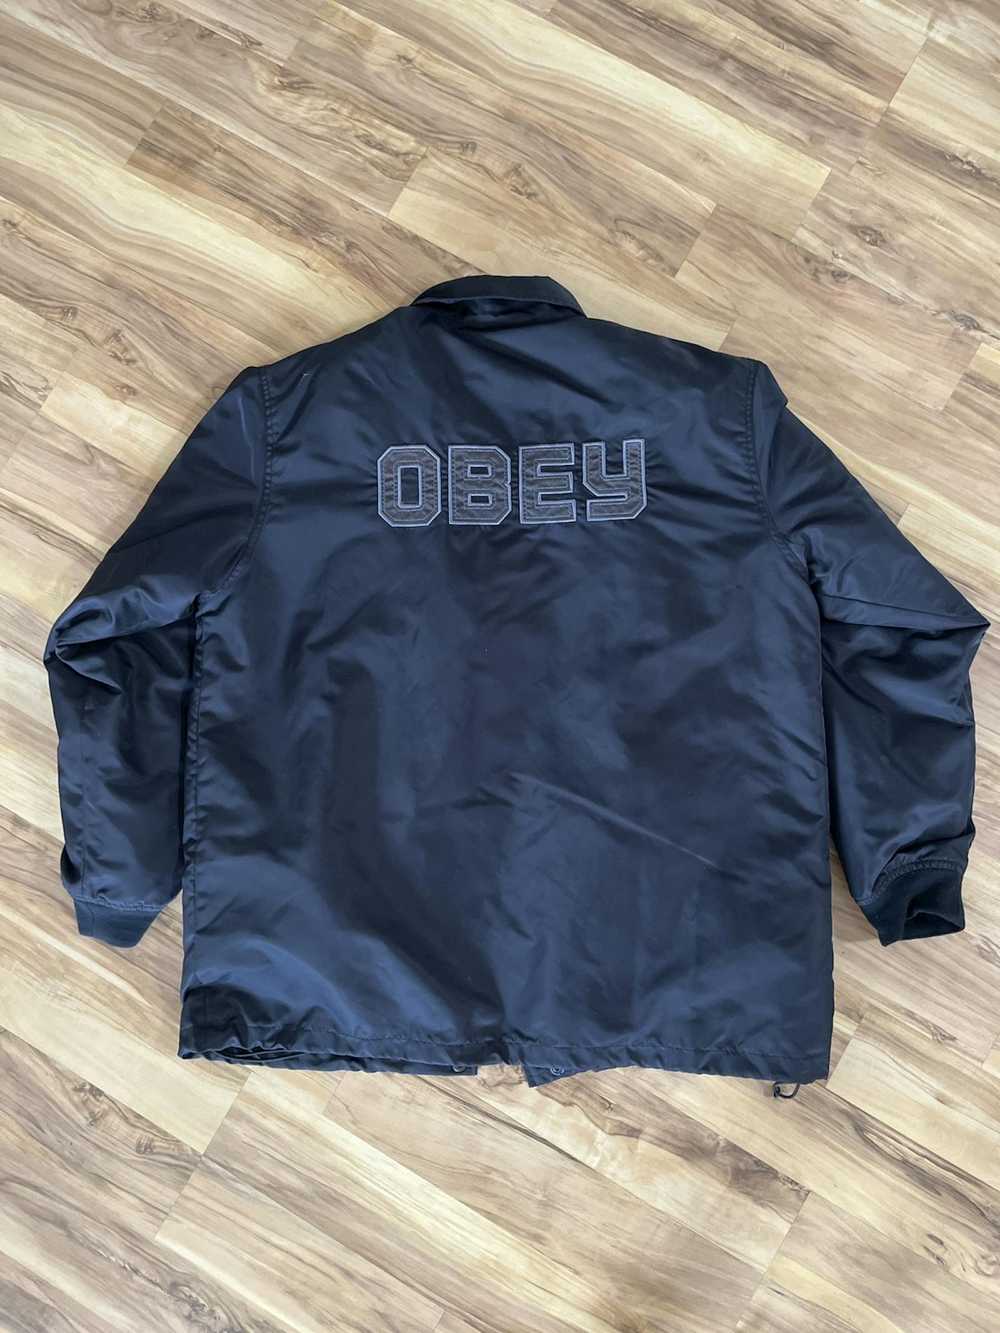 Obey Obey Jacket - image 1